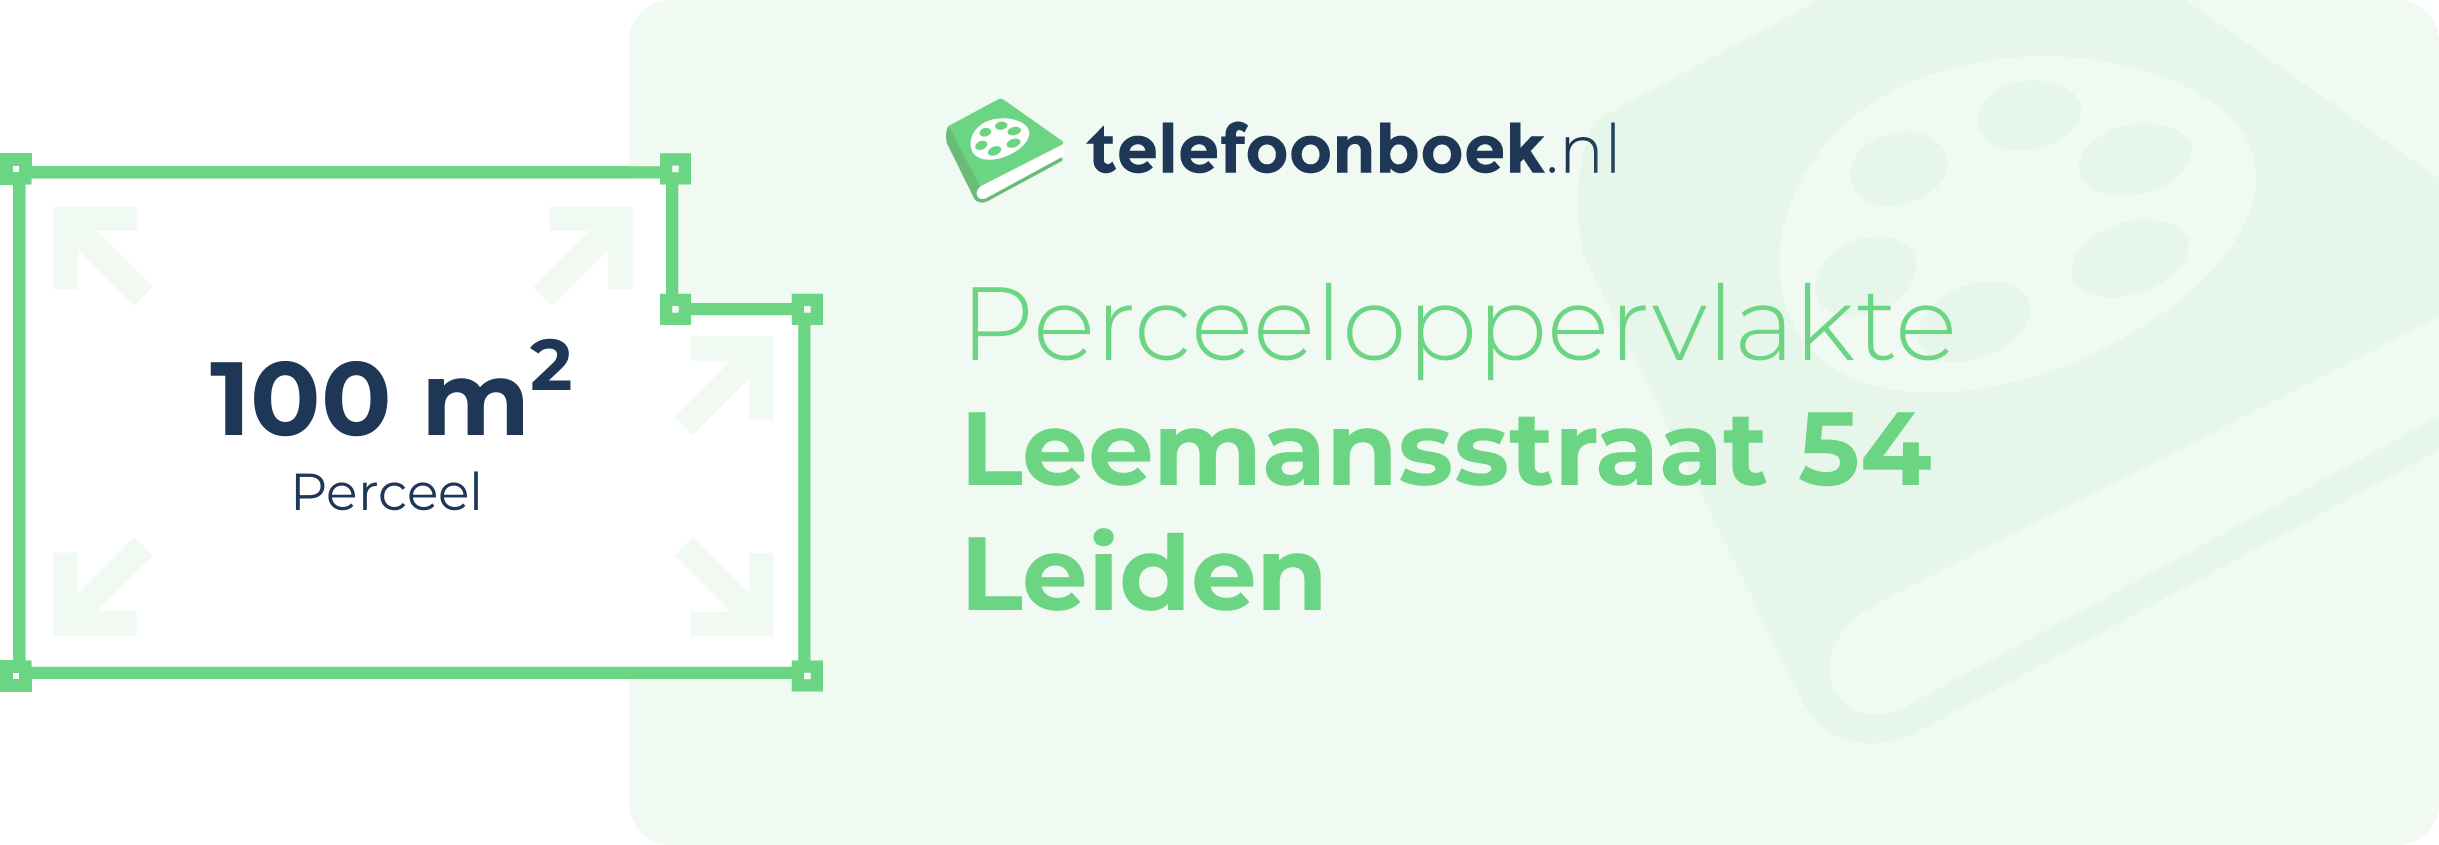 Perceeloppervlakte Leemansstraat 54 Leiden